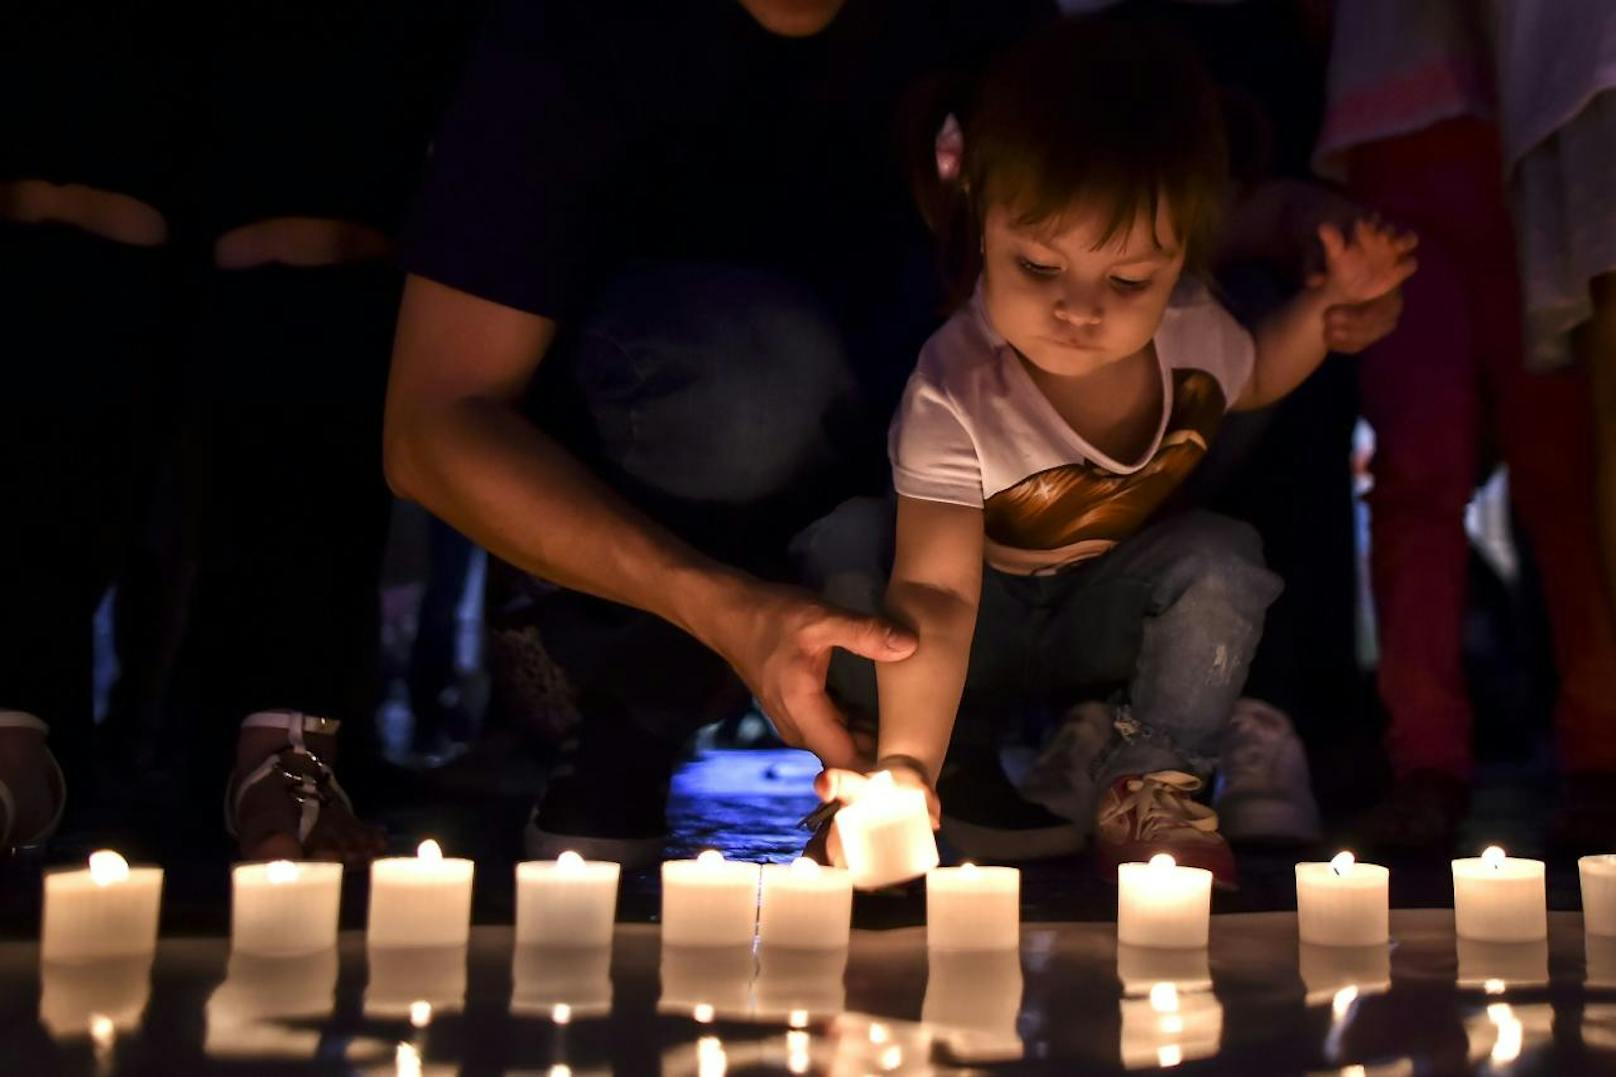 Weltweit haben Städte die Lichter abgedreht. Tausende setzten mit Kerzen ein Zeichen